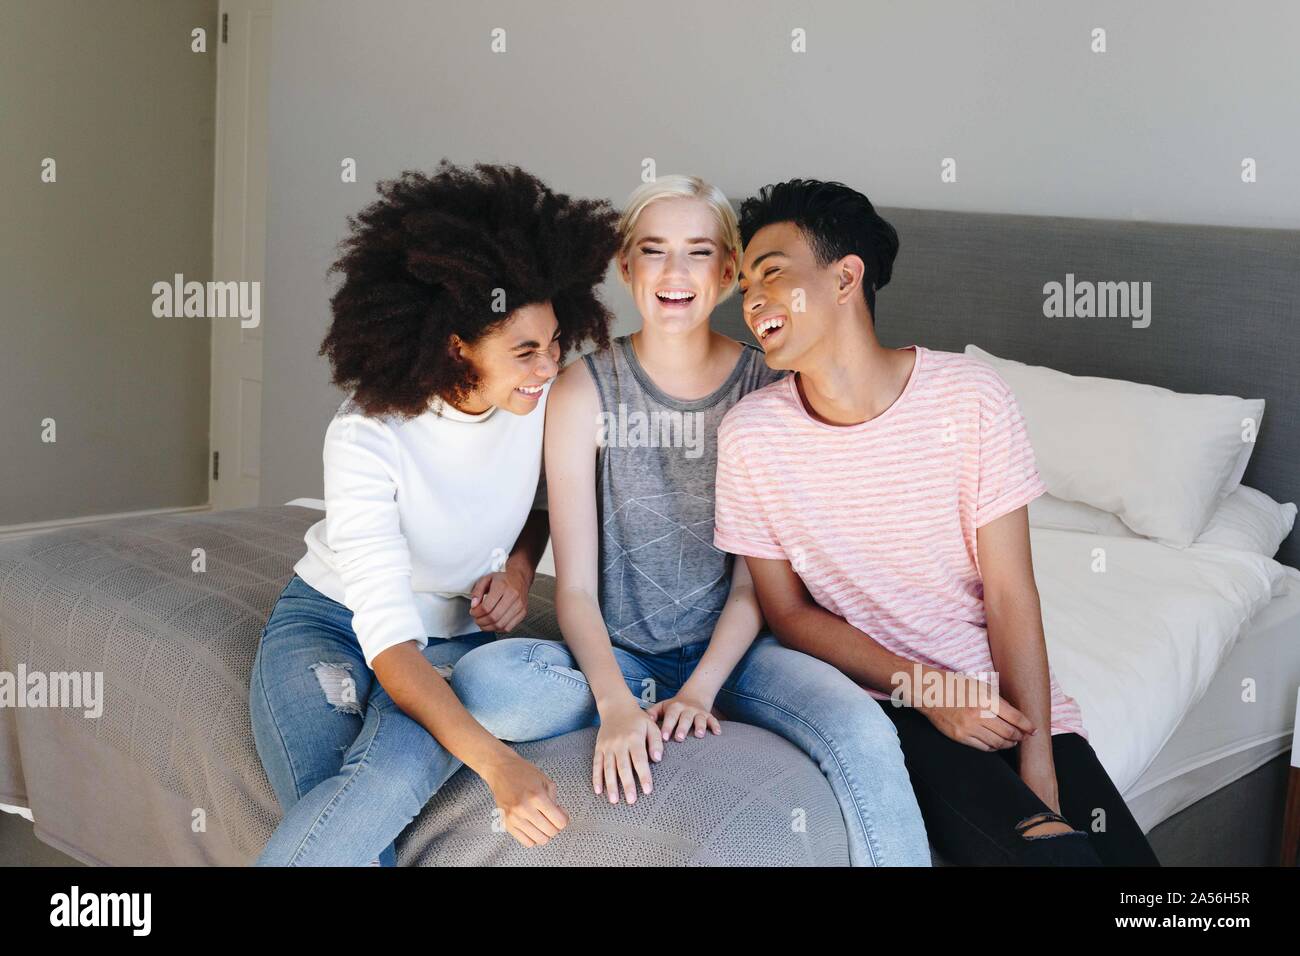 Jeune homme et deux femmes friends sitting on bed laughing Banque D'Images